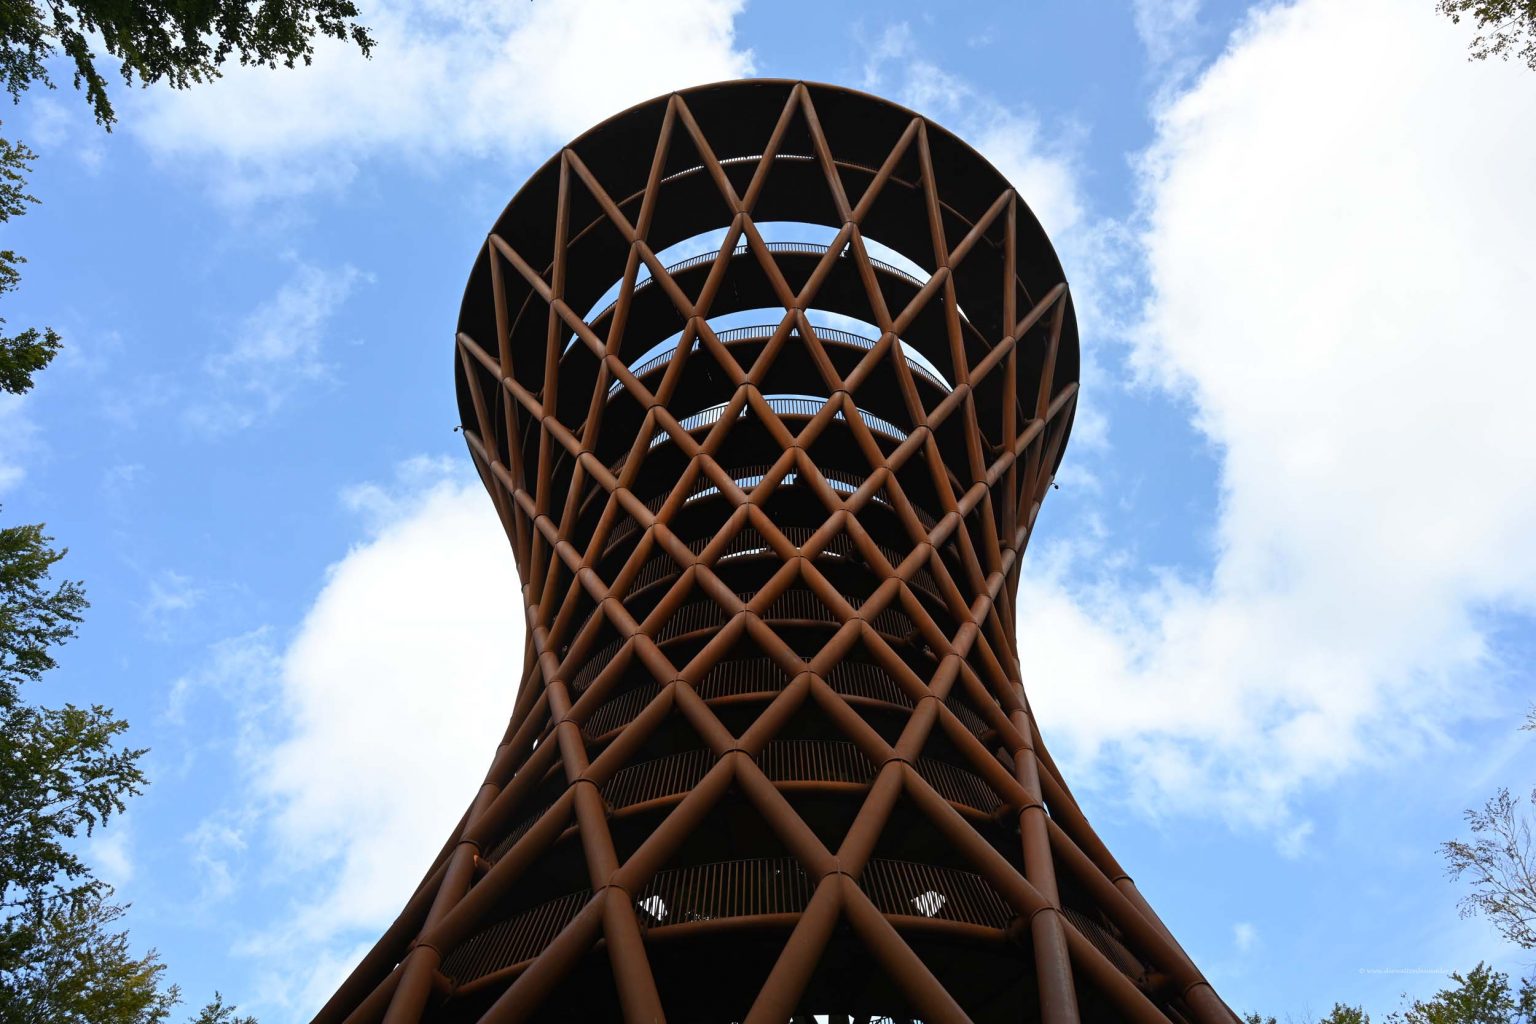 Skovtårnet heißt der Turm